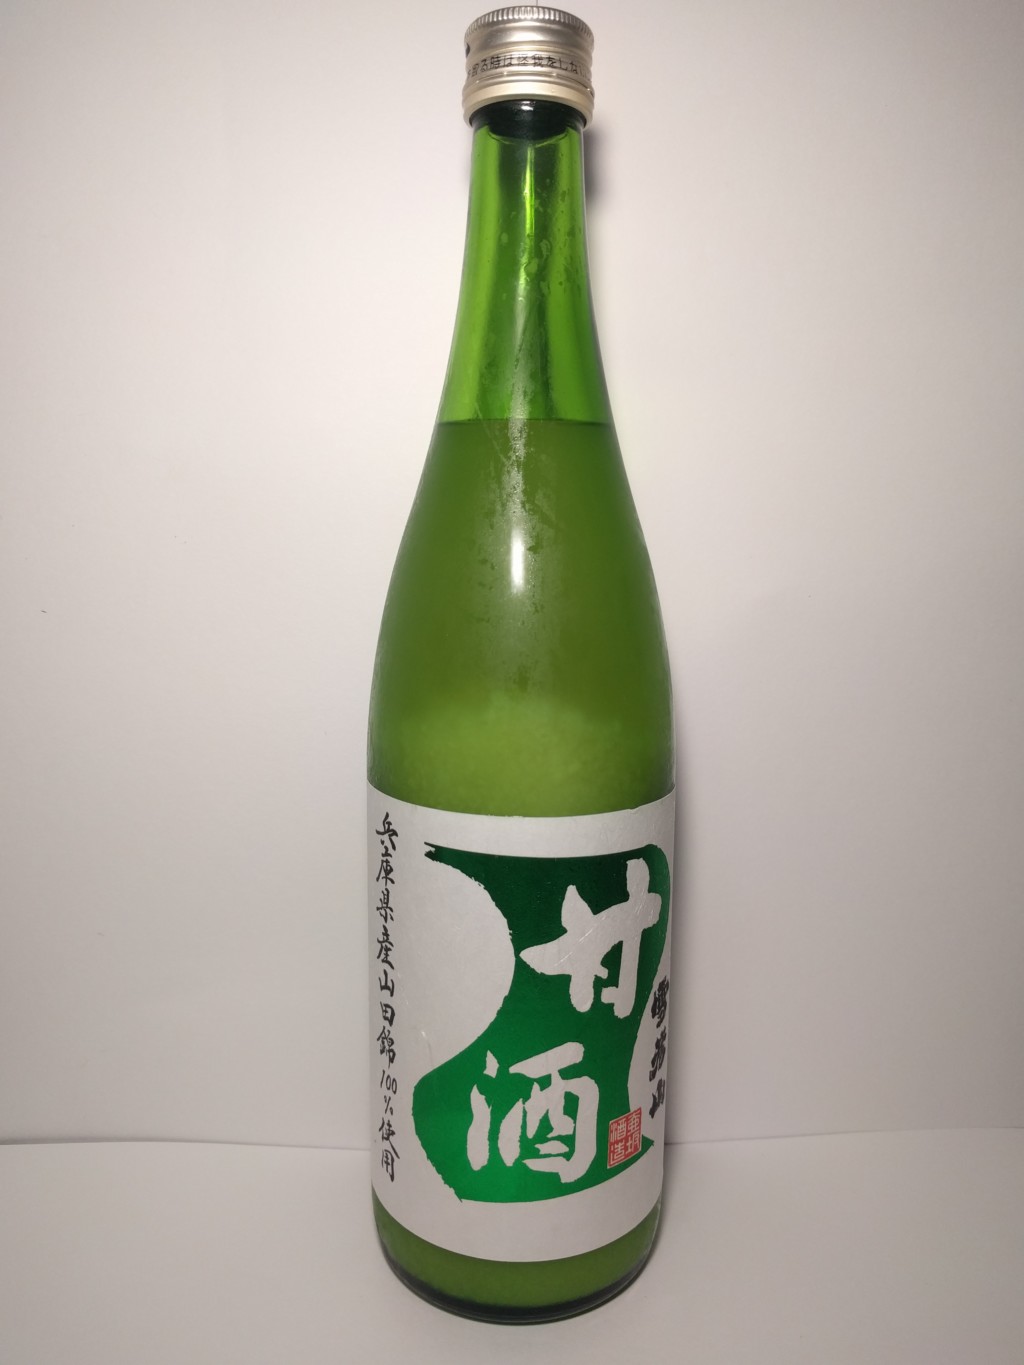 壷坂酒造の山田錦を用いた米麹甘酒『雪彦山甘酒』